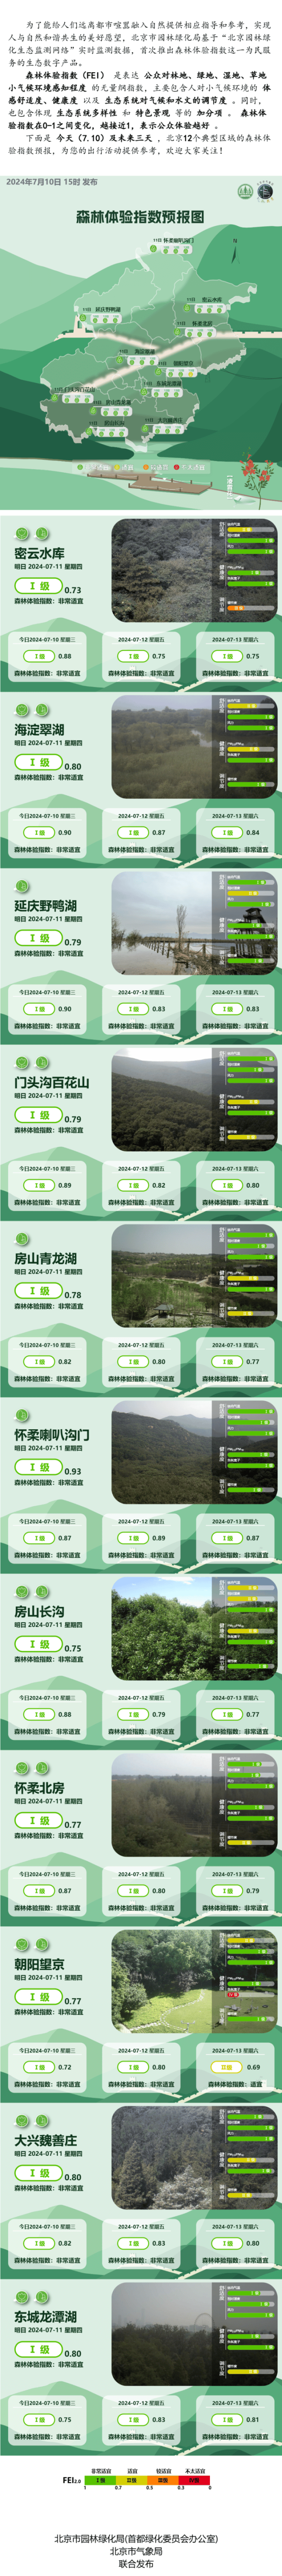 7月10日北京森林体验指数预报